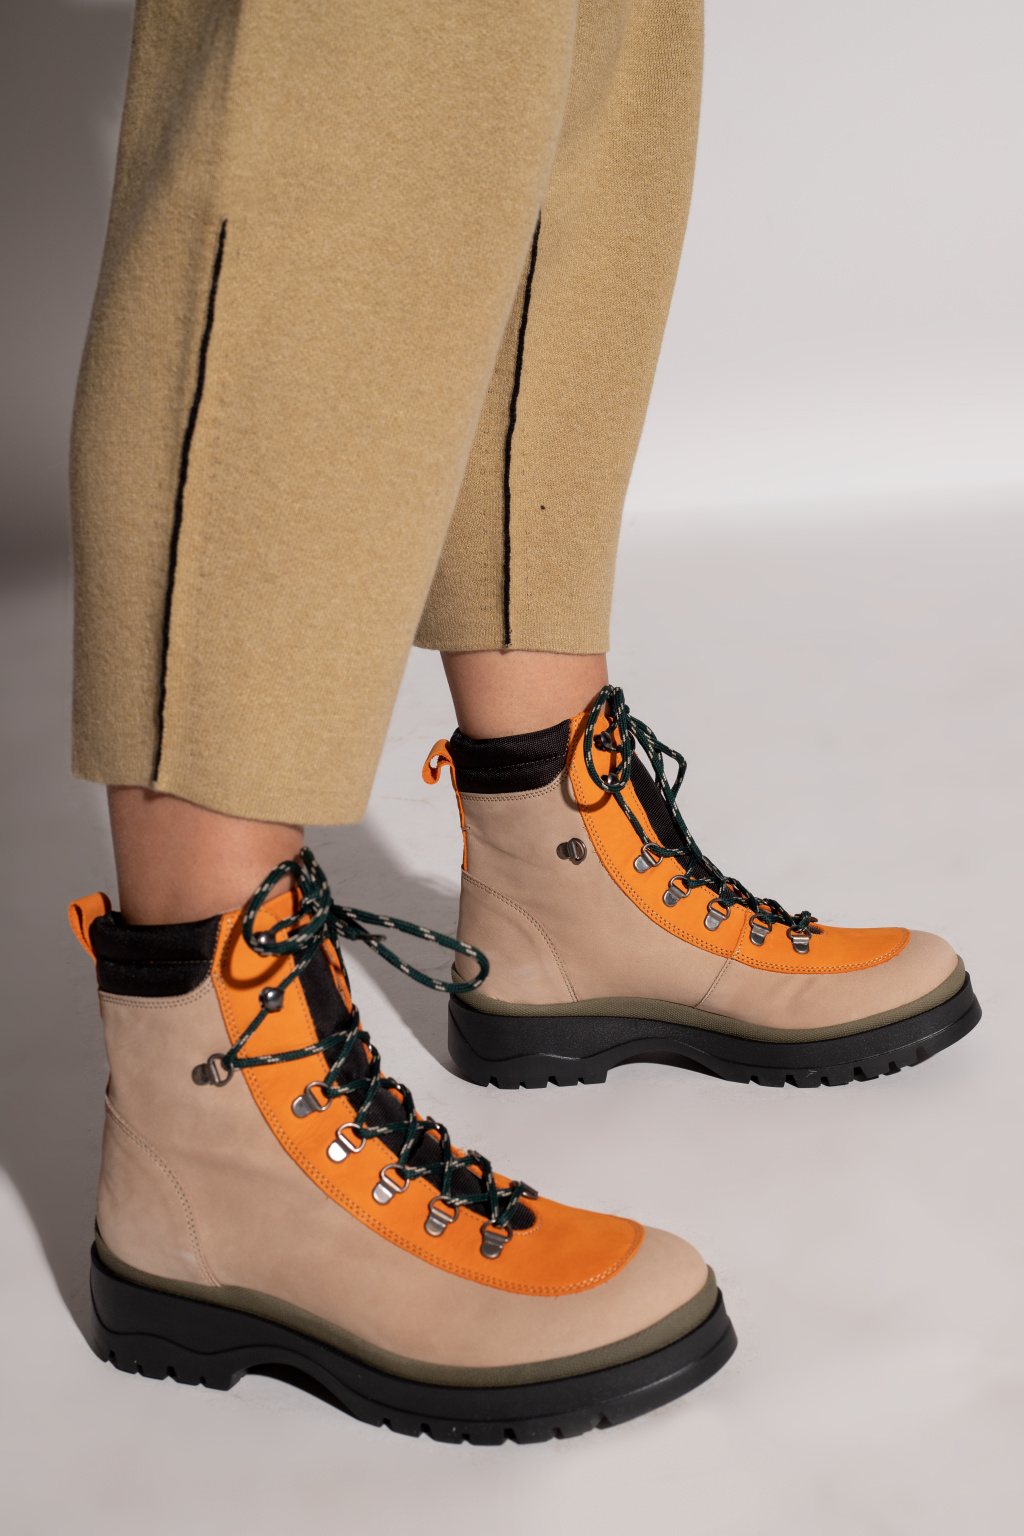 Samsøe Samsøe ‘Makalu’ leather hiking boots